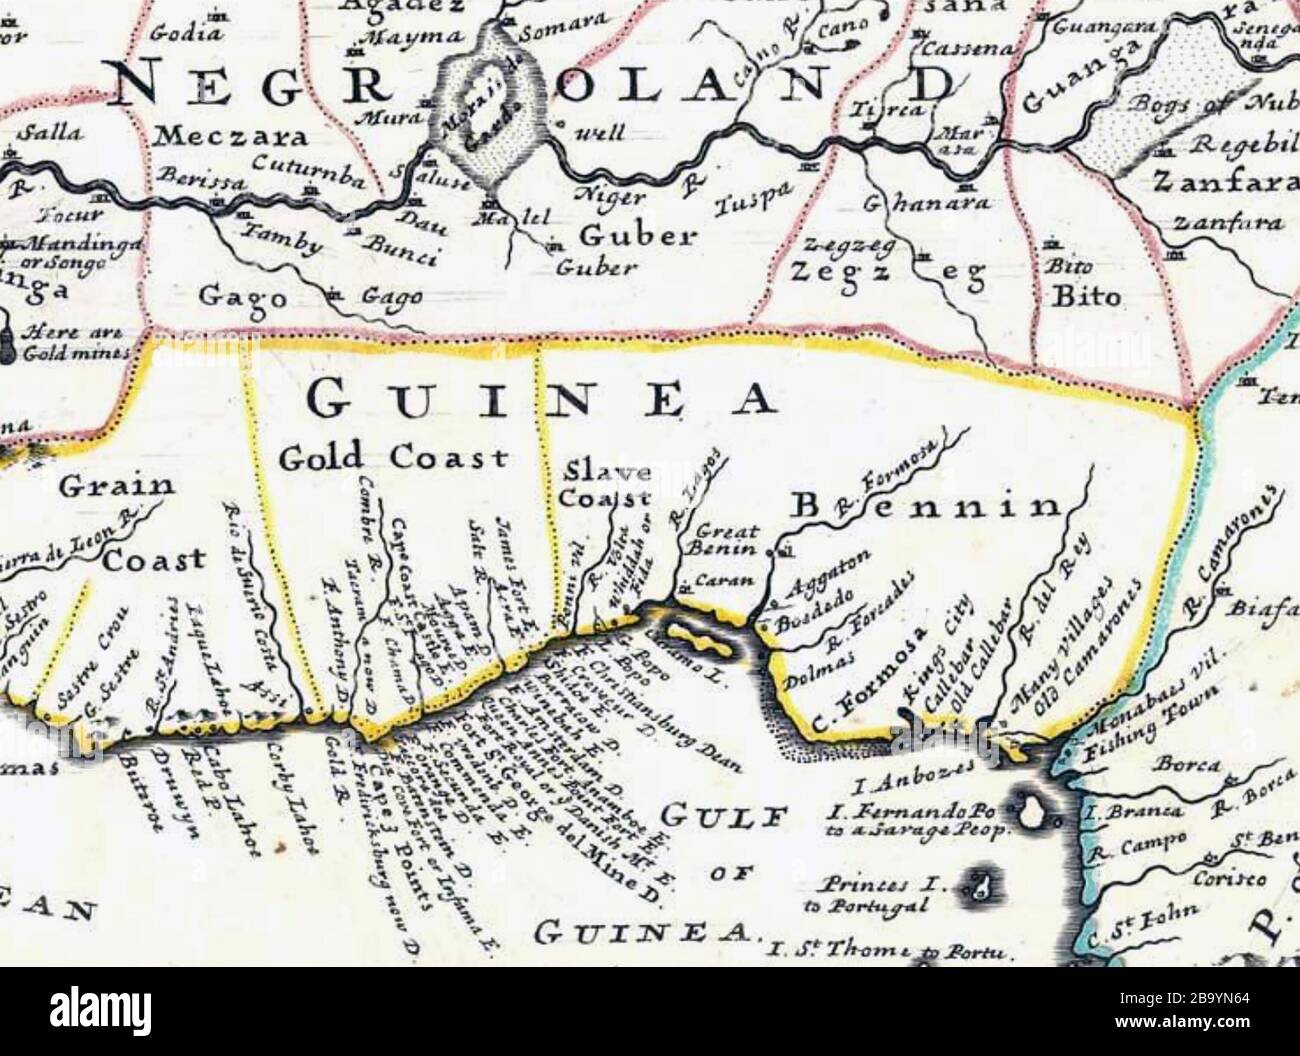 CÔTE DES ESCLAVES Afrique de l'Ouest sur une carte de 1727. Avec la permission de l'Université de Floride Banque D'Images